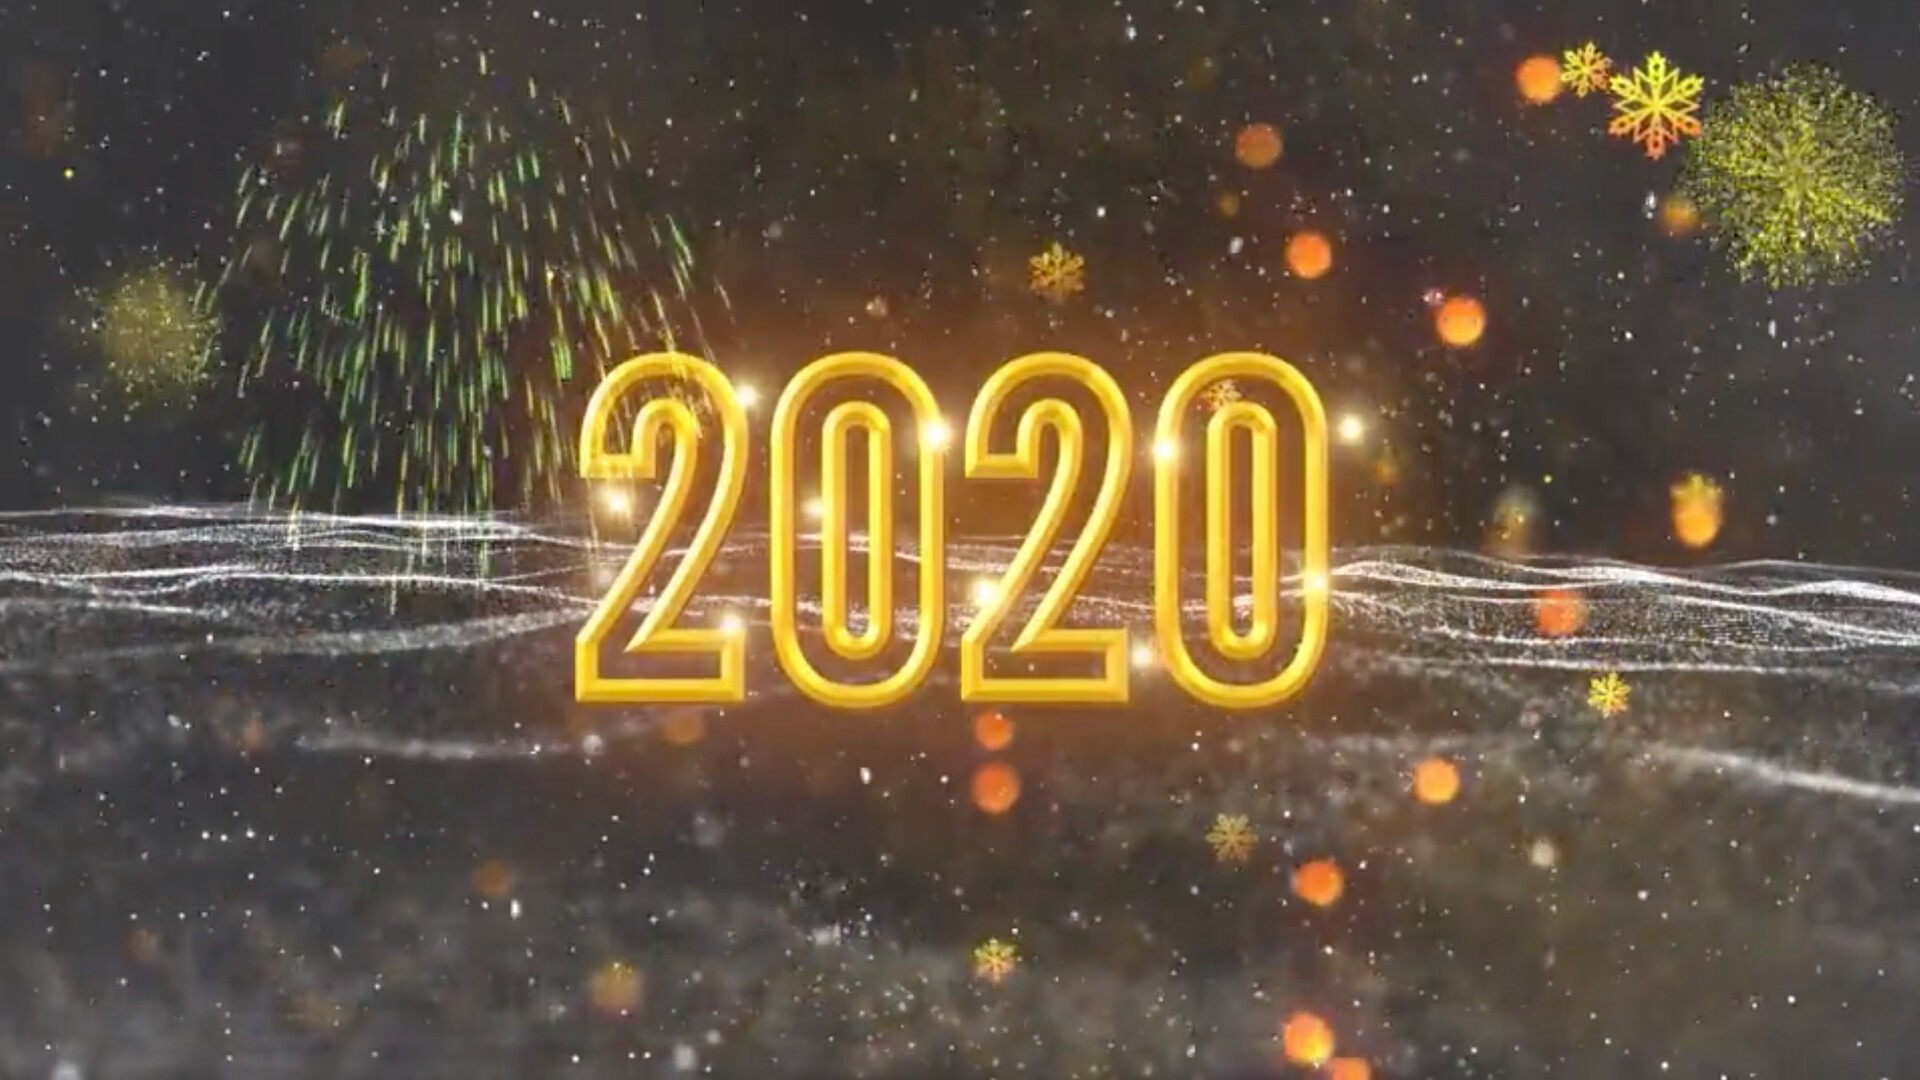 fcpx插件:绚丽烟花新年倒计时片头特效 New Year Countdown 2021